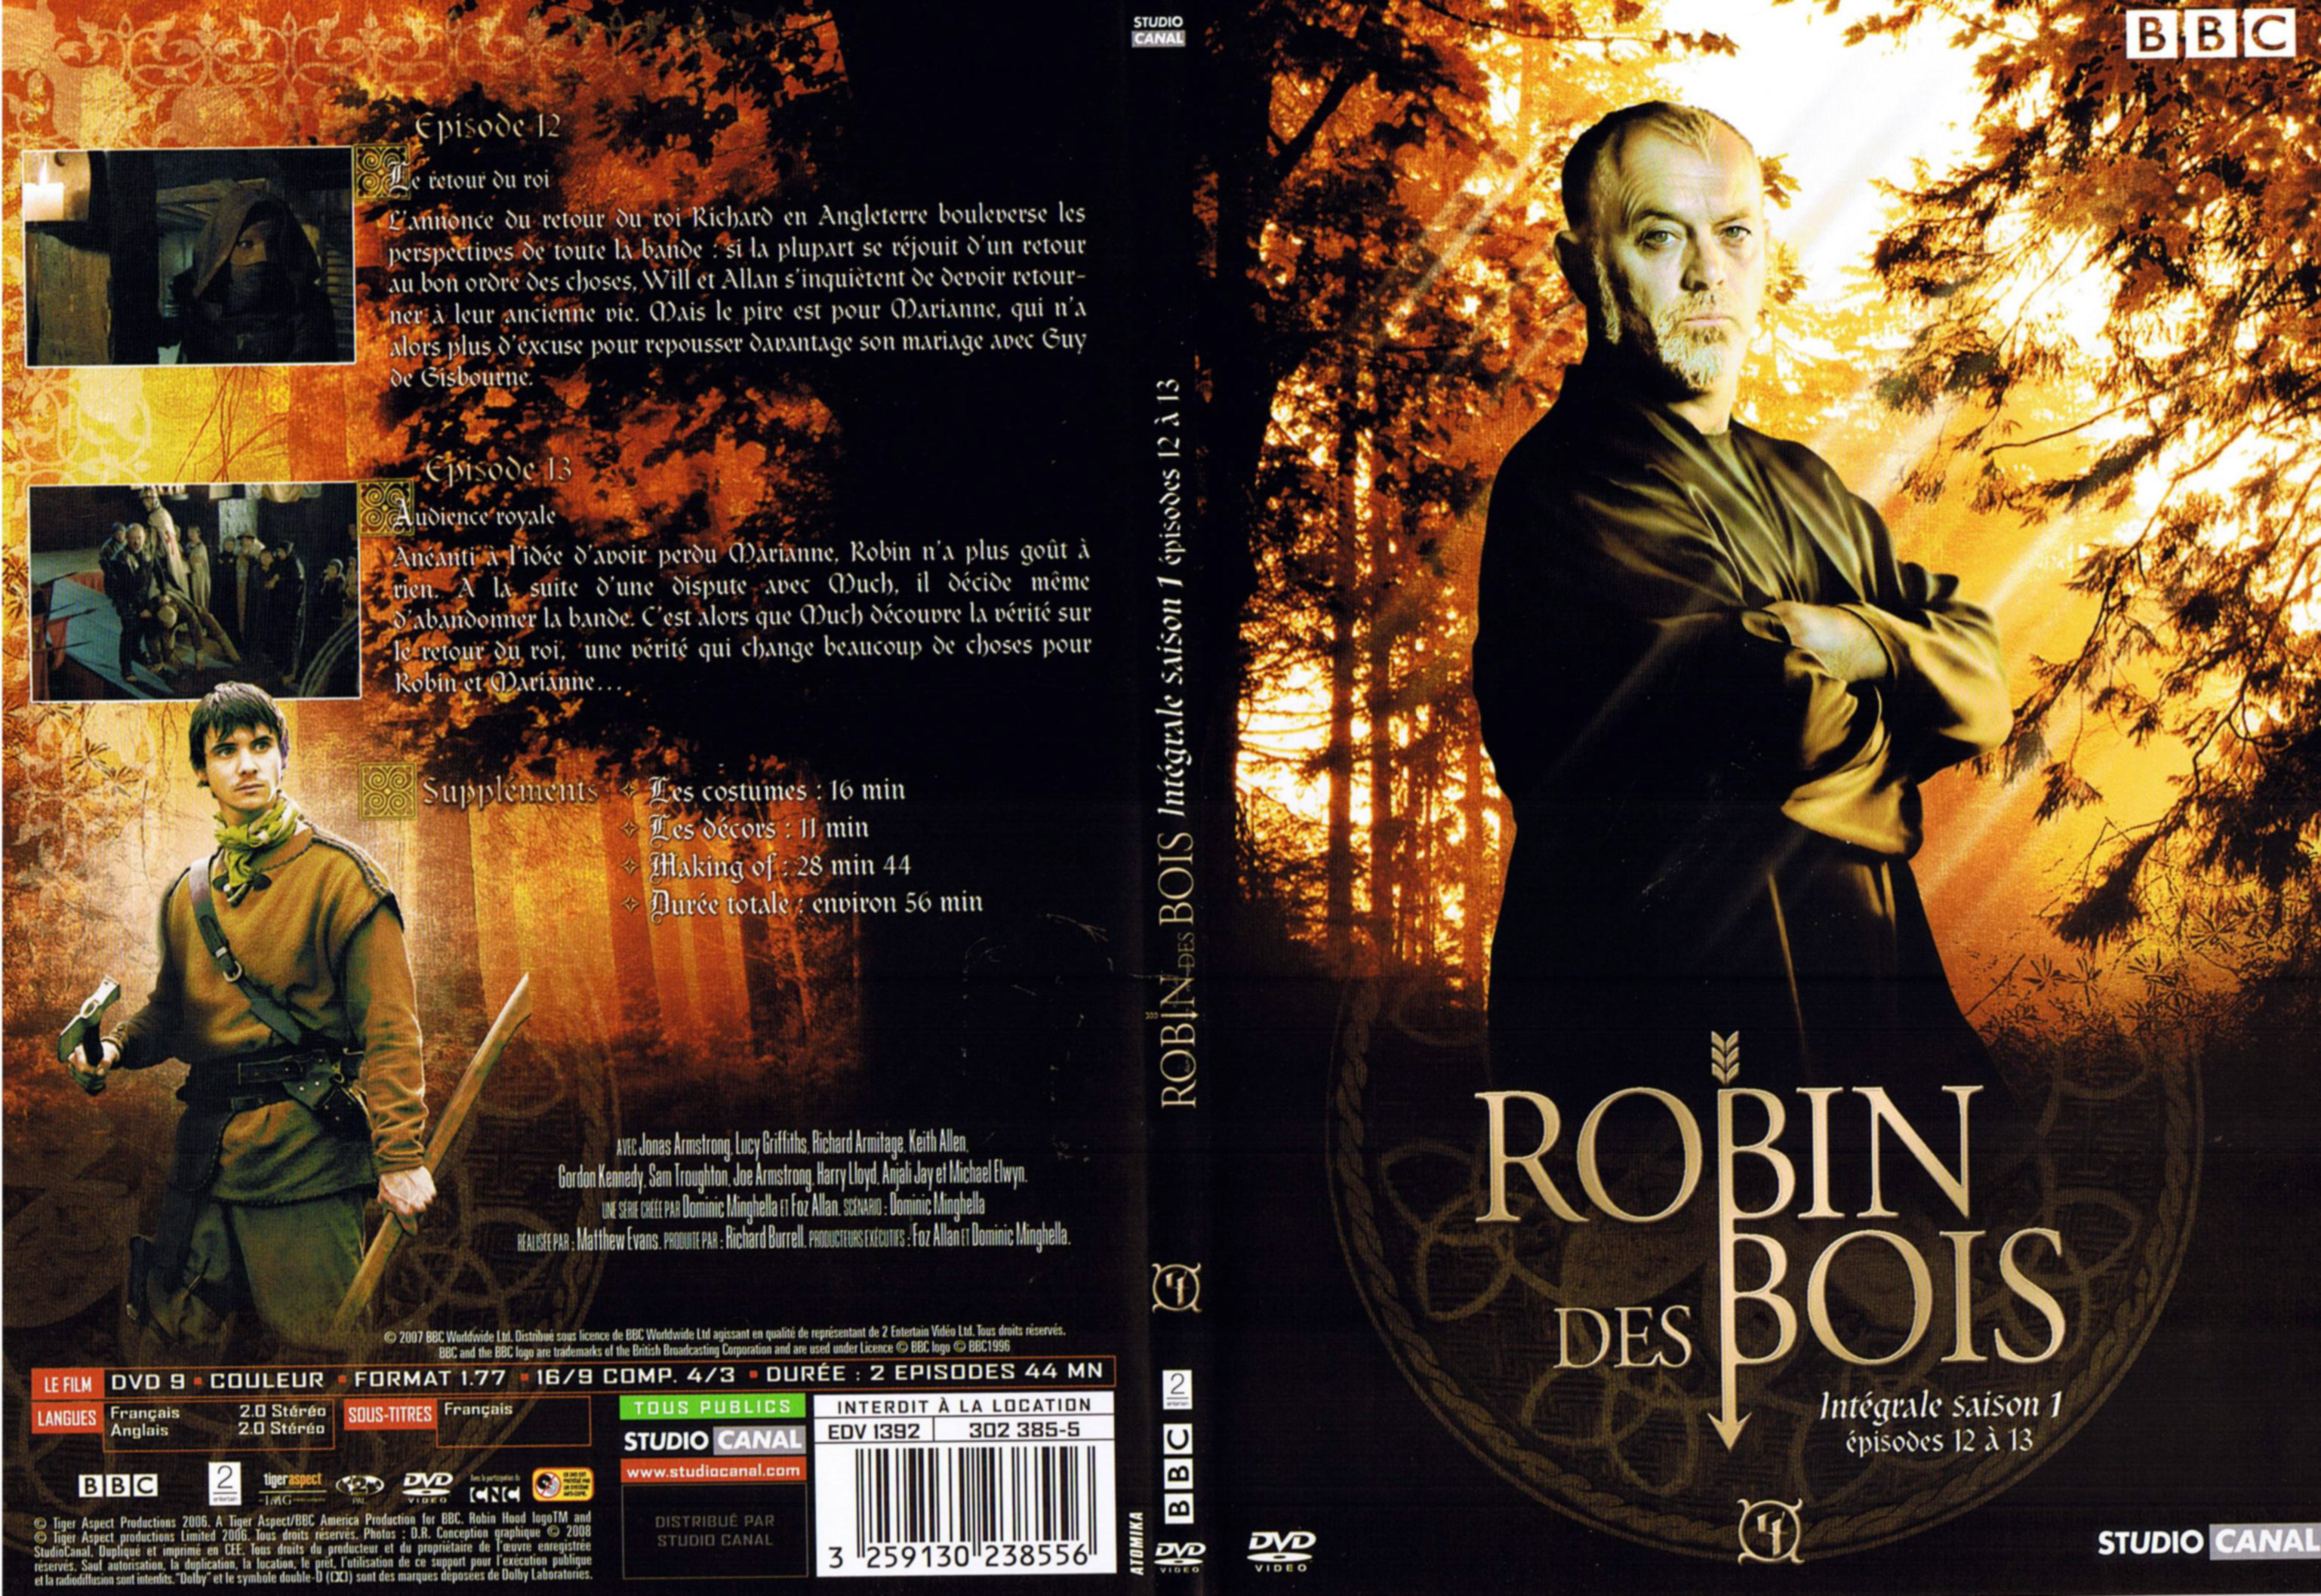 Jaquette DVD Robin des bois Saison 1 DVD 4